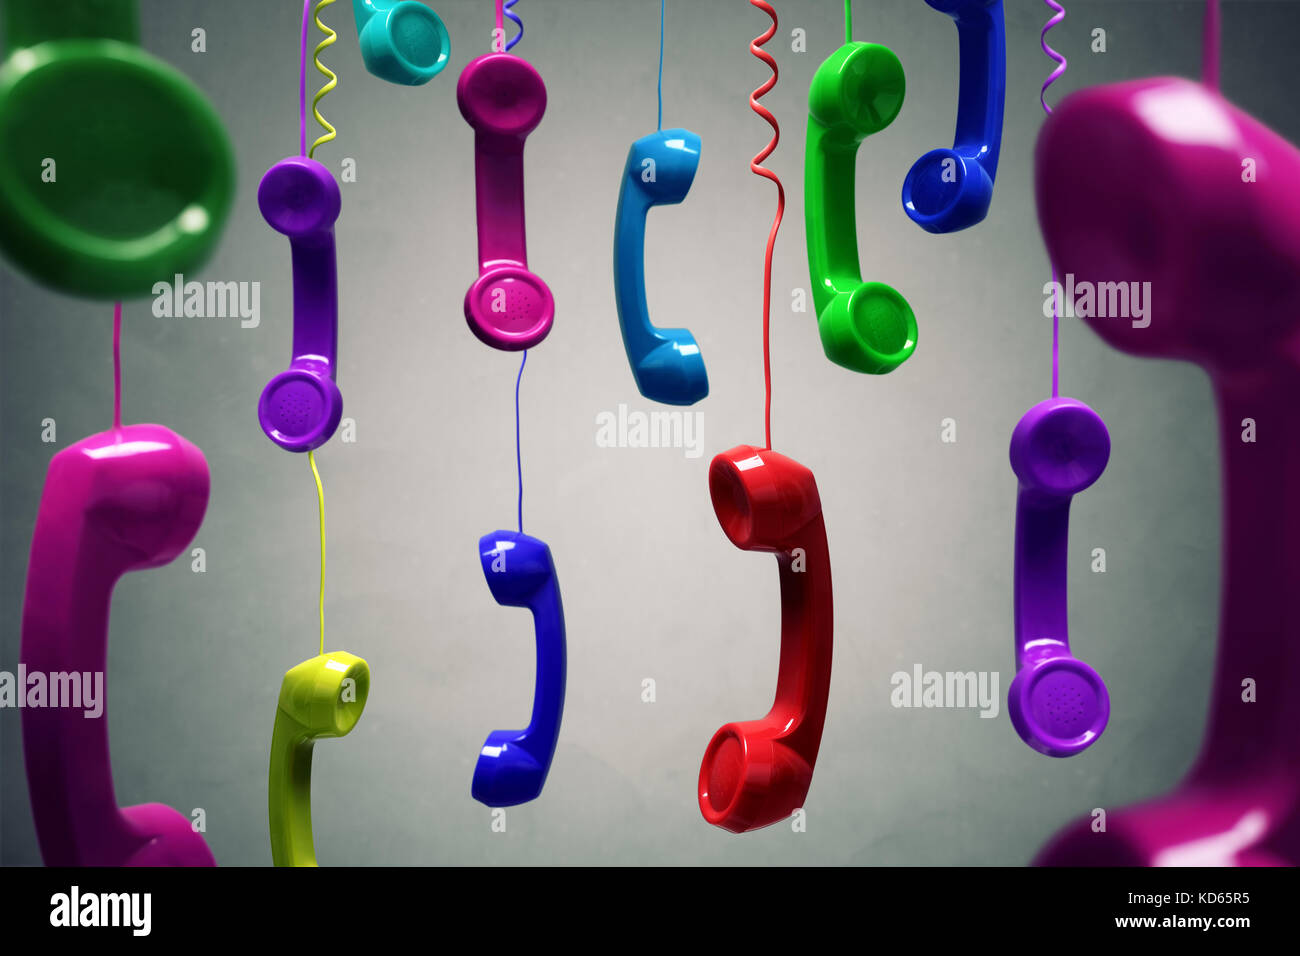 Rot und bunten Telefon Empfänger hängt über grauer Hintergrund Konzept für am Telefon, Kundenservice, oder kontaktieren Sie uns Stockfoto